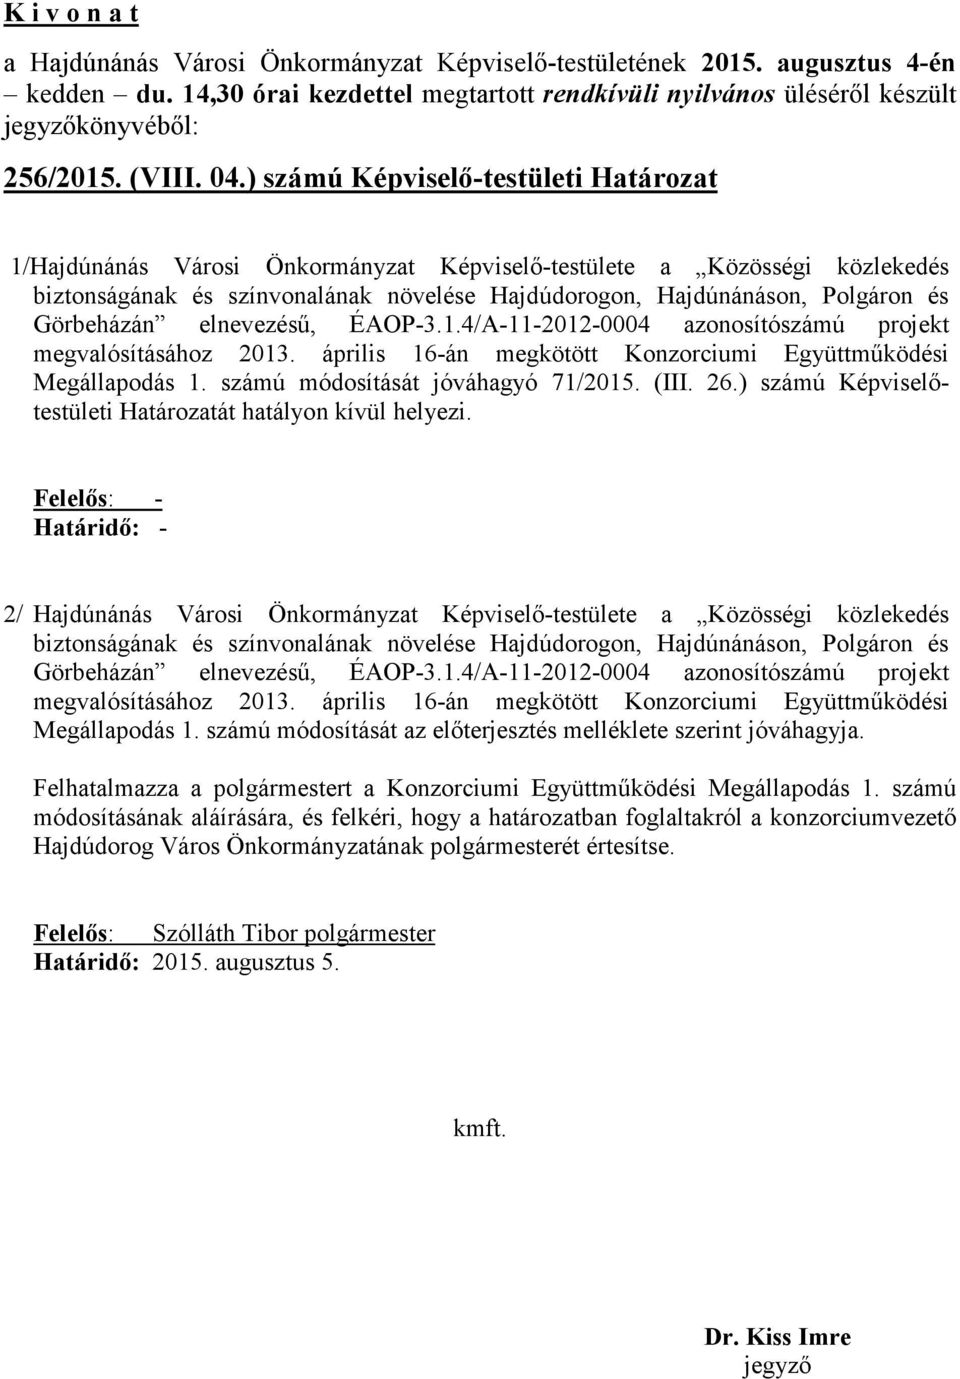 Görbeházán elnevezésű, ÉAOP-3.1.4/A-11-2012-0004 azonosítószámú projekt megvalósításához 2013. április 16-án megkötött Konzorciumi Együttműködési Megállapodás 1. számú módosítását jóváhagyó 71/2015.